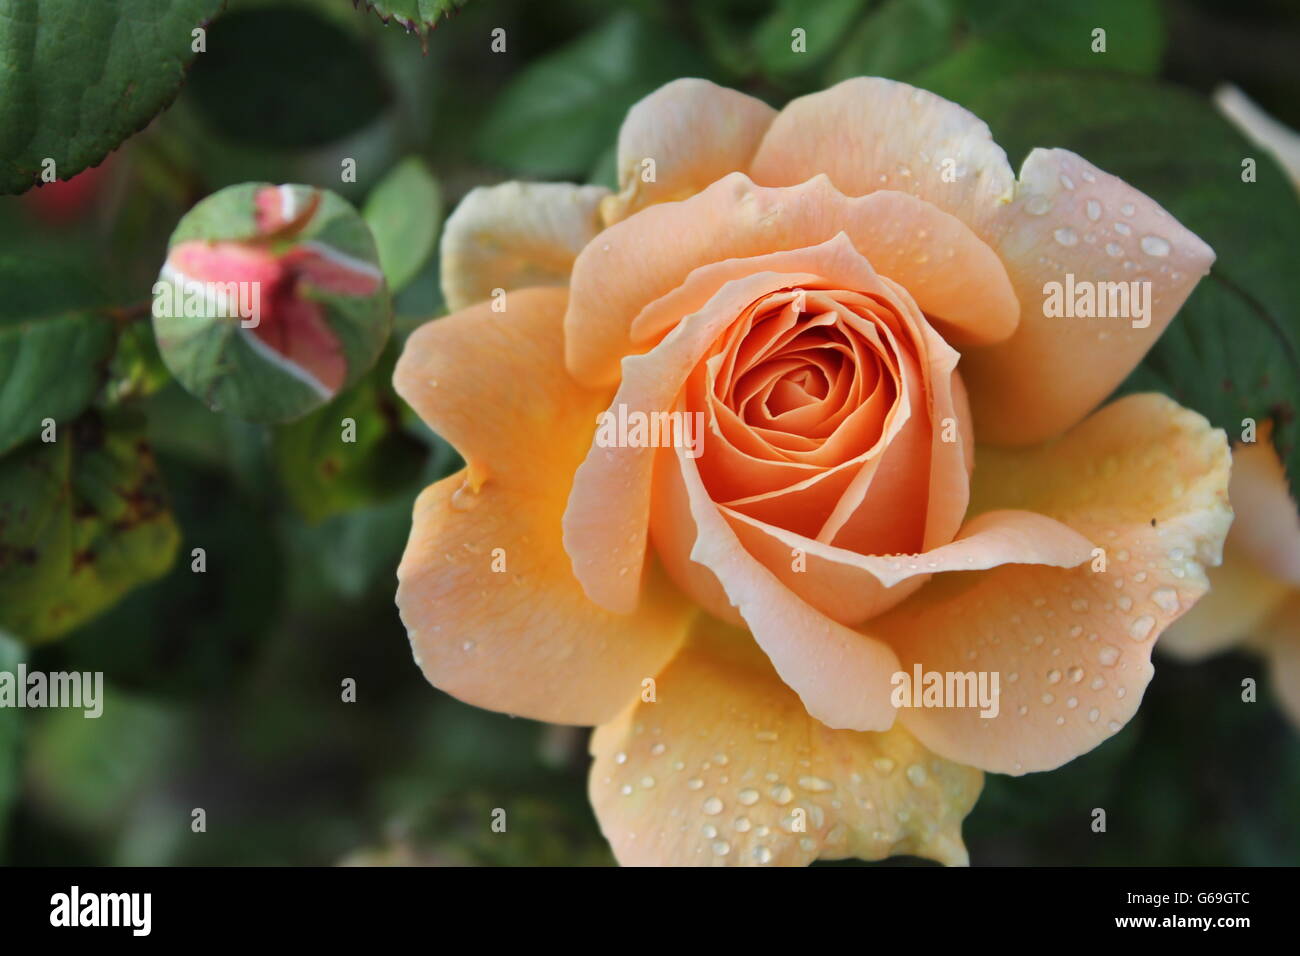 Pfirsich Rose und Knospe, Sommerblume, Gartenarbeit, Hampshire, britische Blume Stockfoto